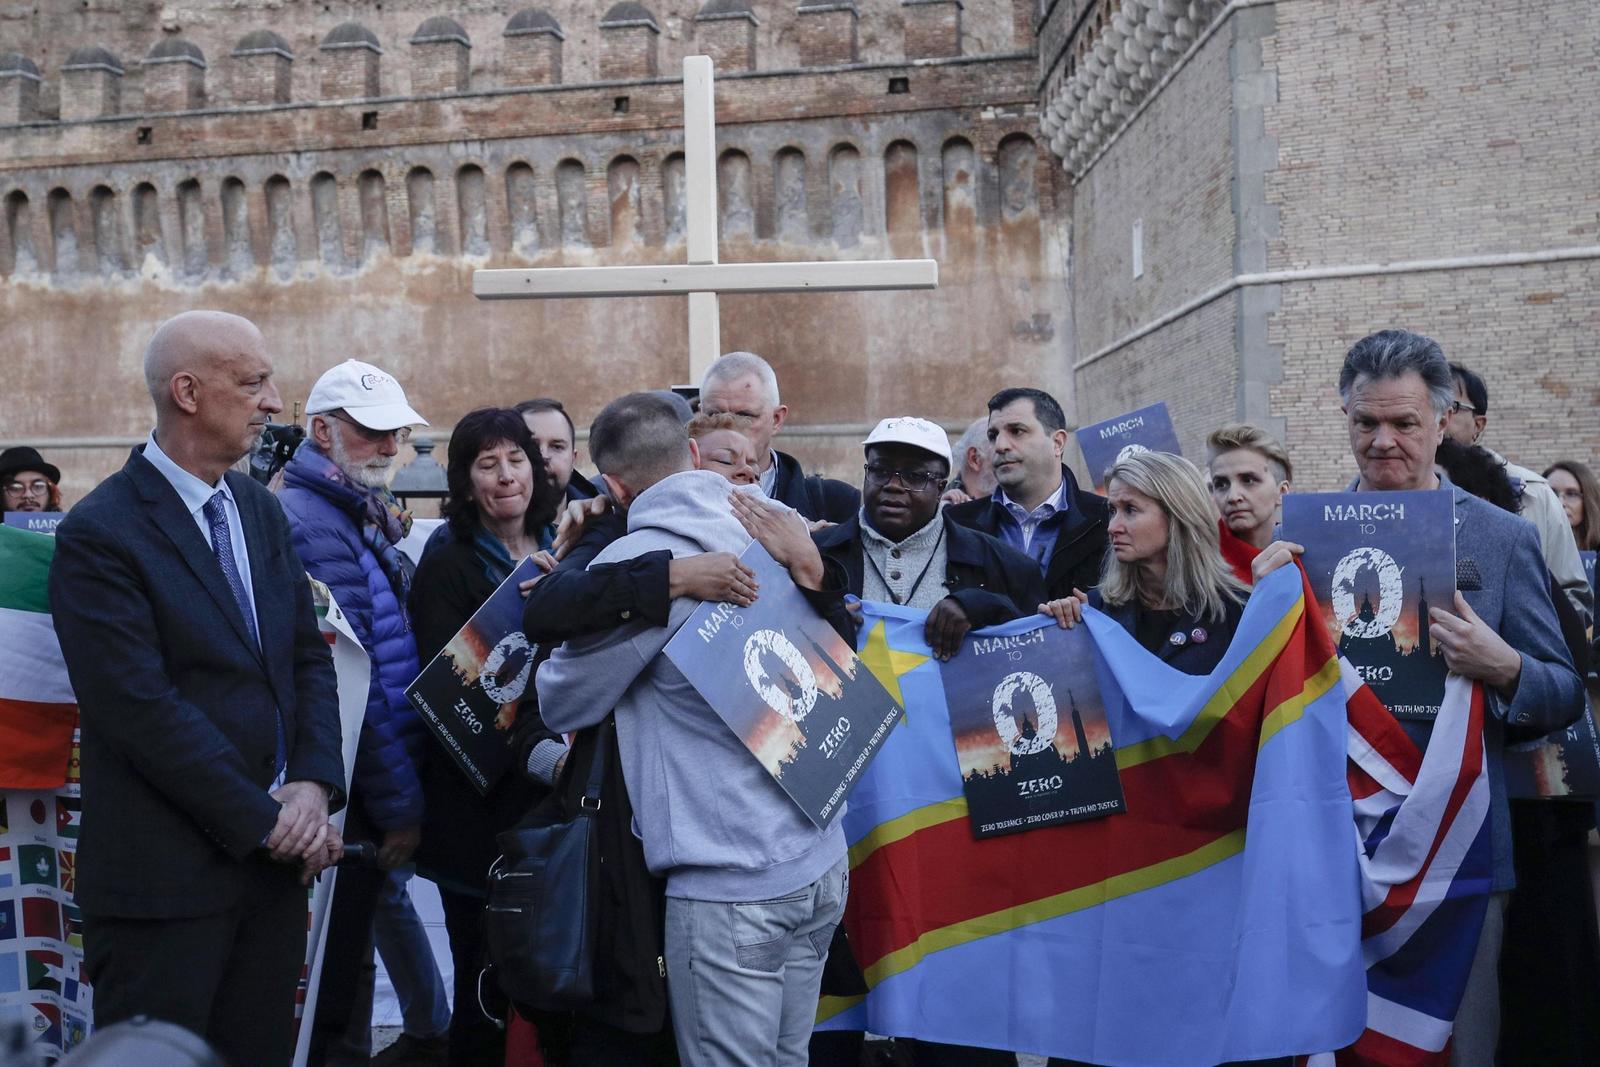 El papa Francisco “no se toma en serio el problema” de los abusos
sexuales, dijo ayer el español Miguel Hurtado, víctima de la pederastia clerical. (EFE)